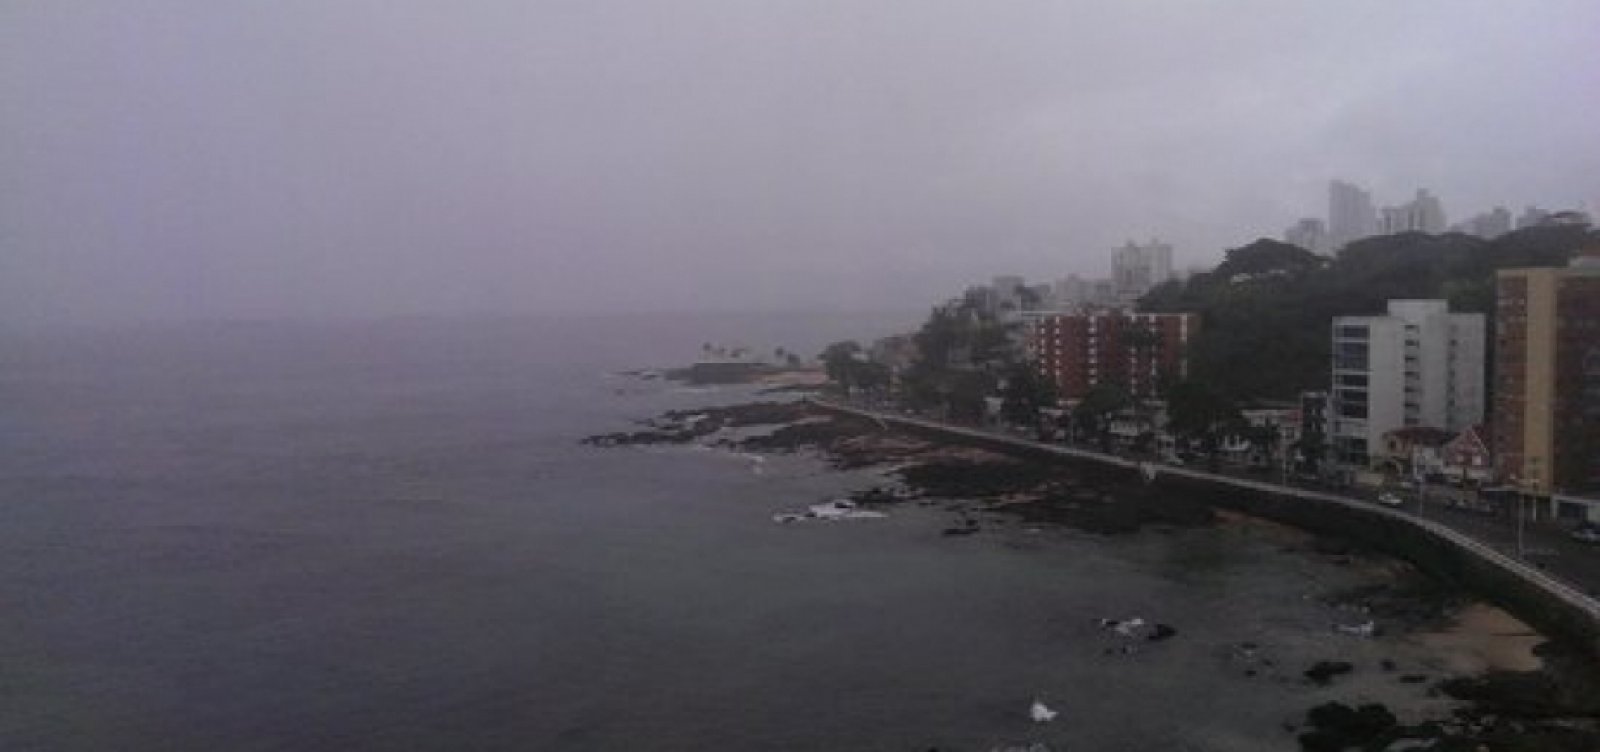 Marinha emite alerta de mau tempo com ventos fortes e possível ressaca no litoral da Bahia